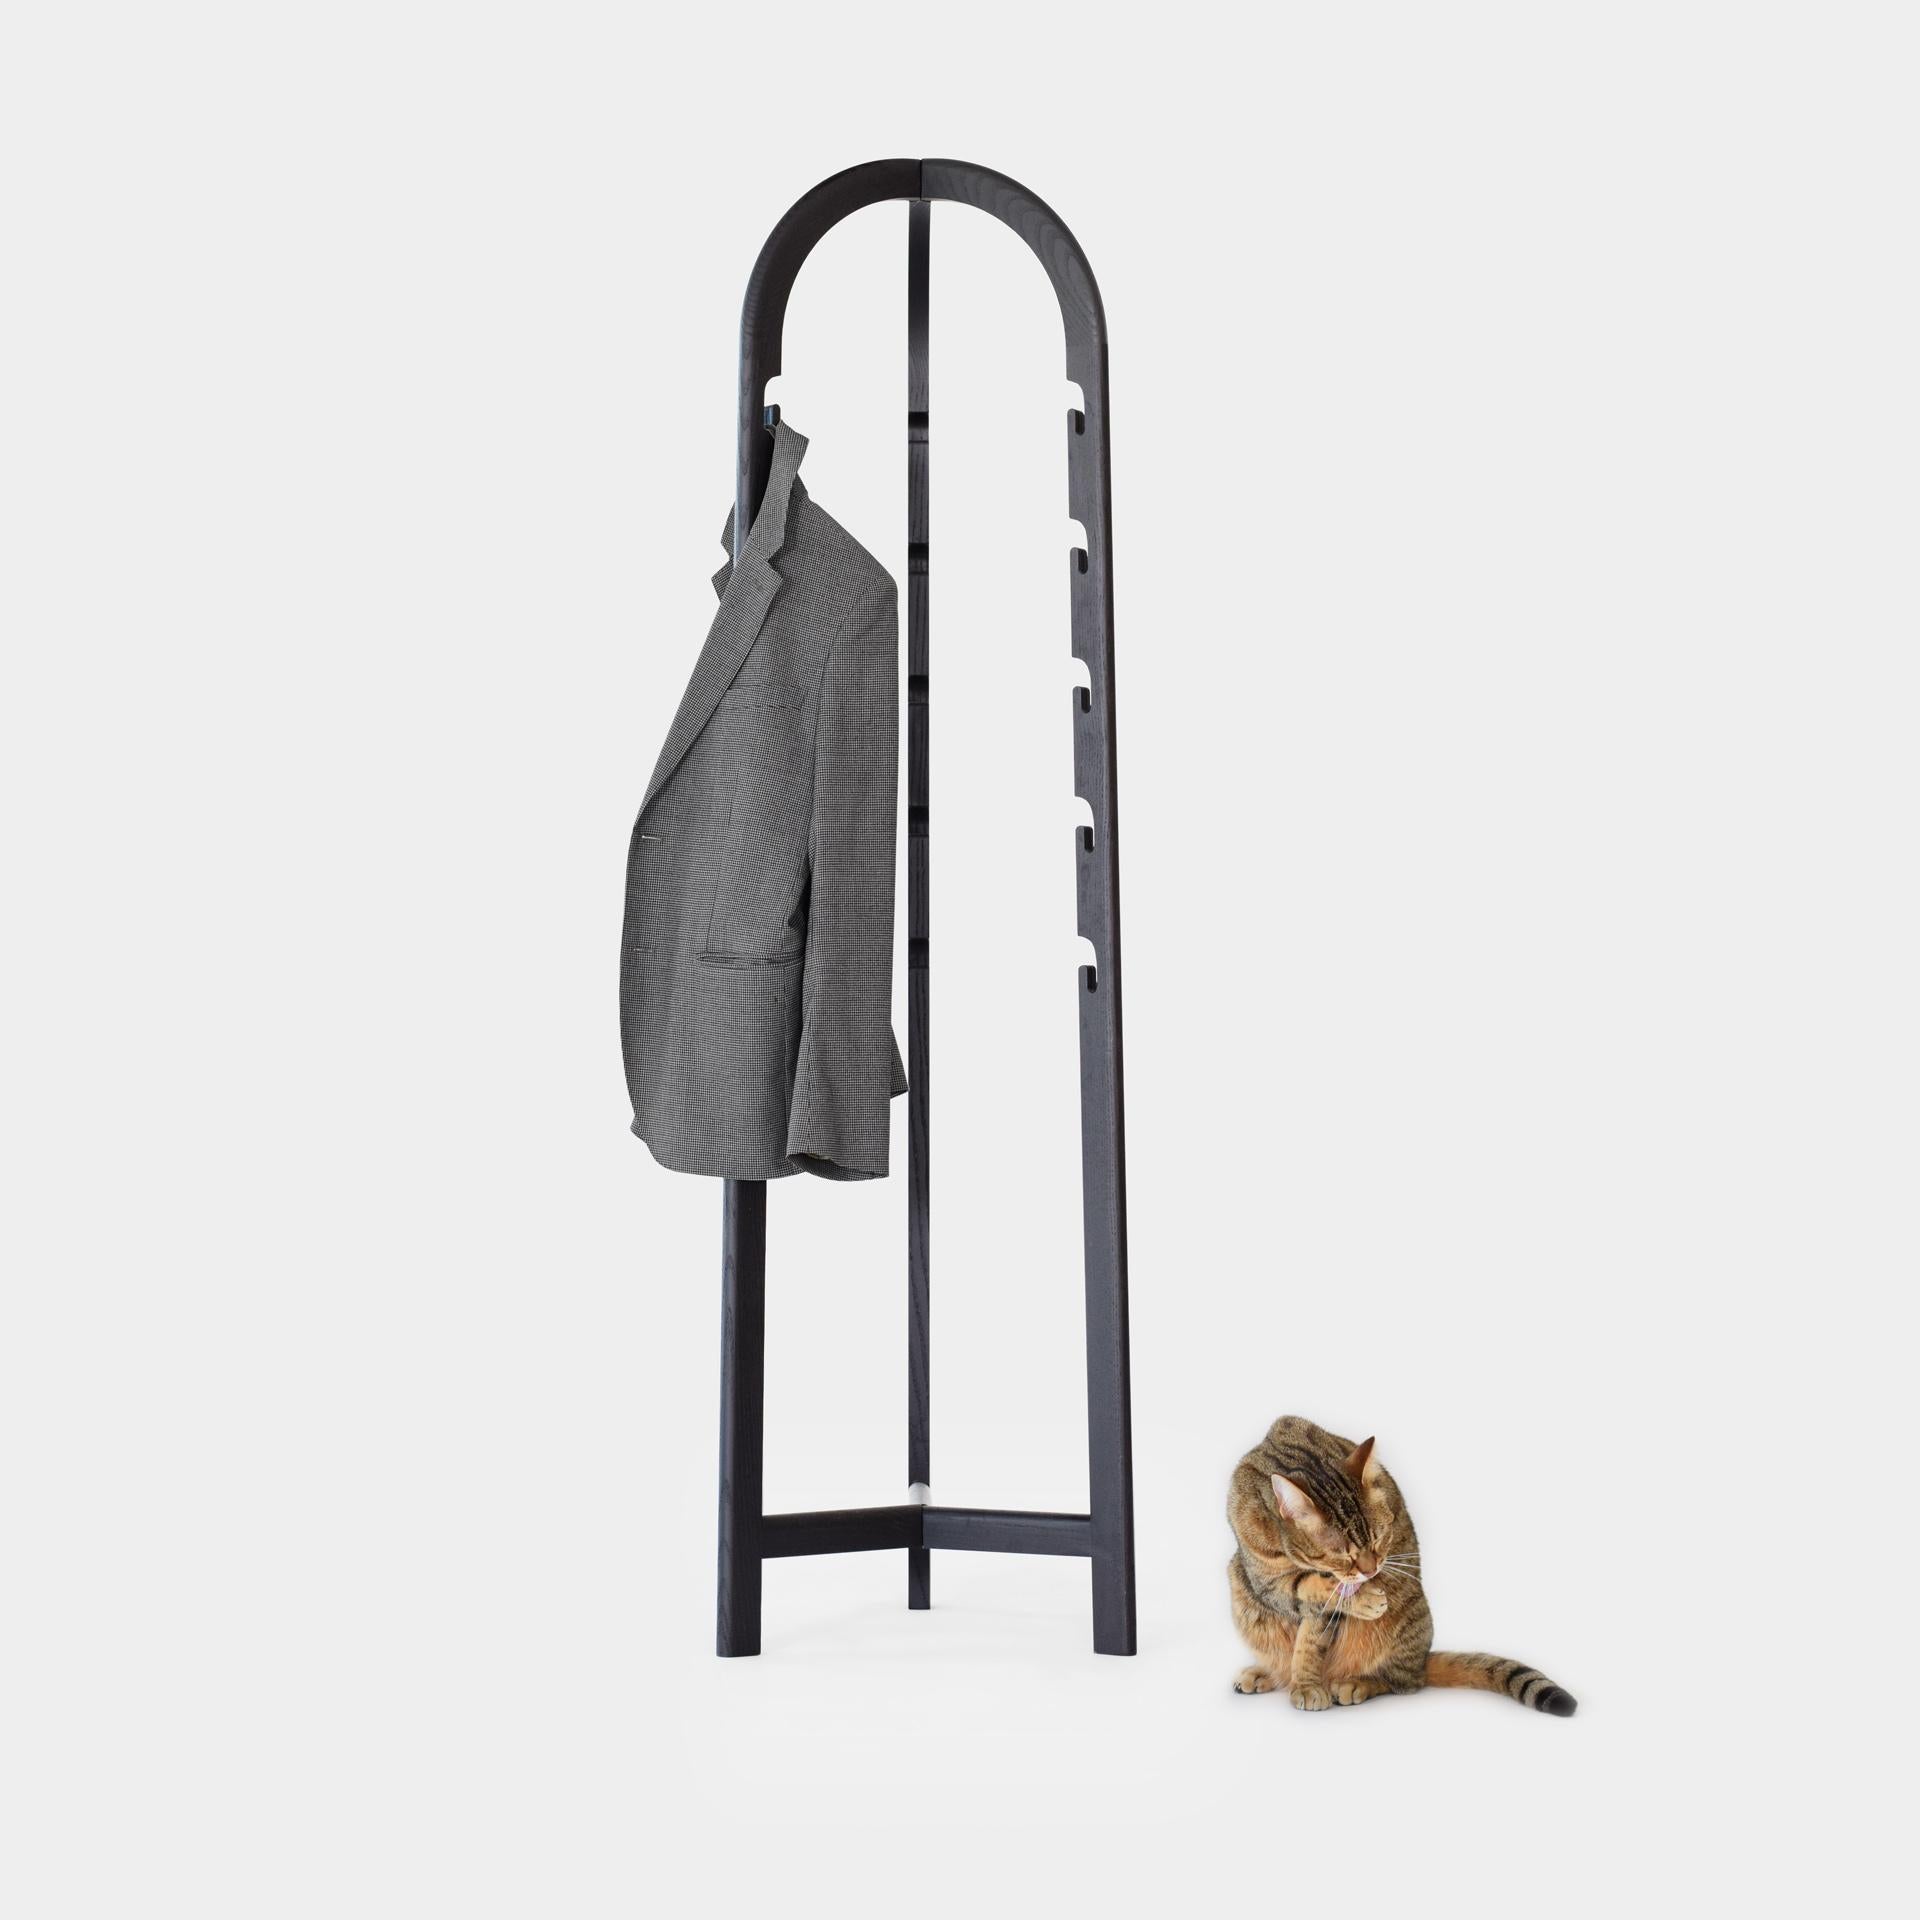 Scandinave moderne Porte-manteaux pliable / support d'entrée en chêne ou en noir en vente